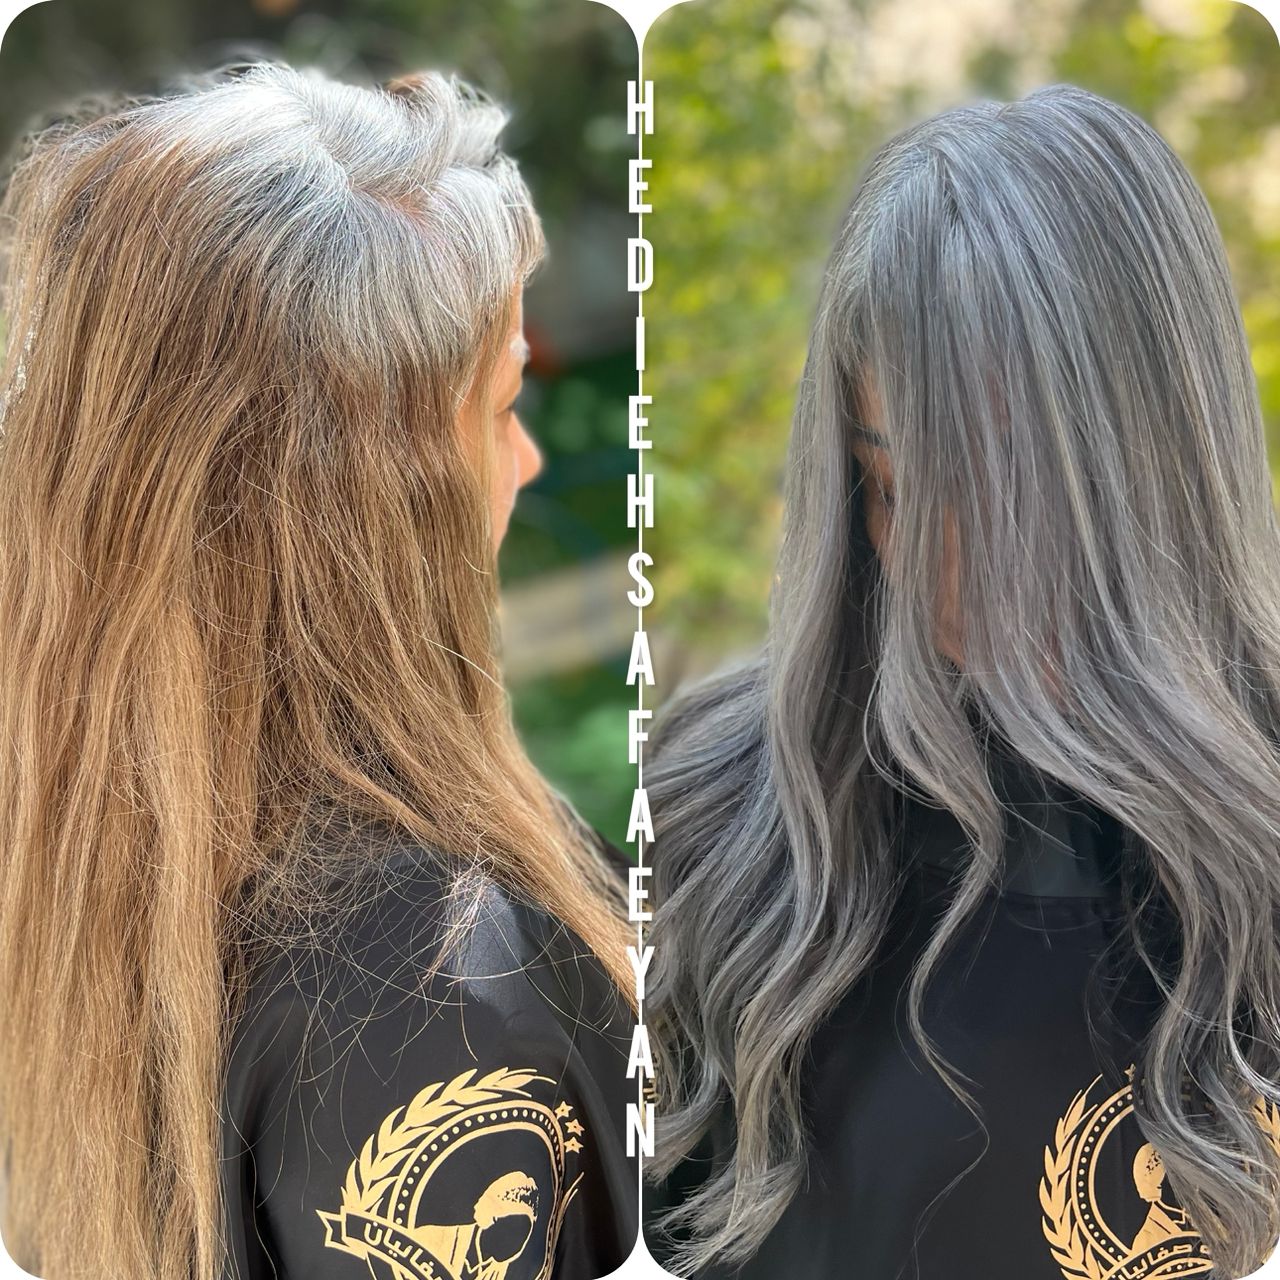 تکنیک رنگ موی نقره ای بجای ریشه گیری موهای سفید